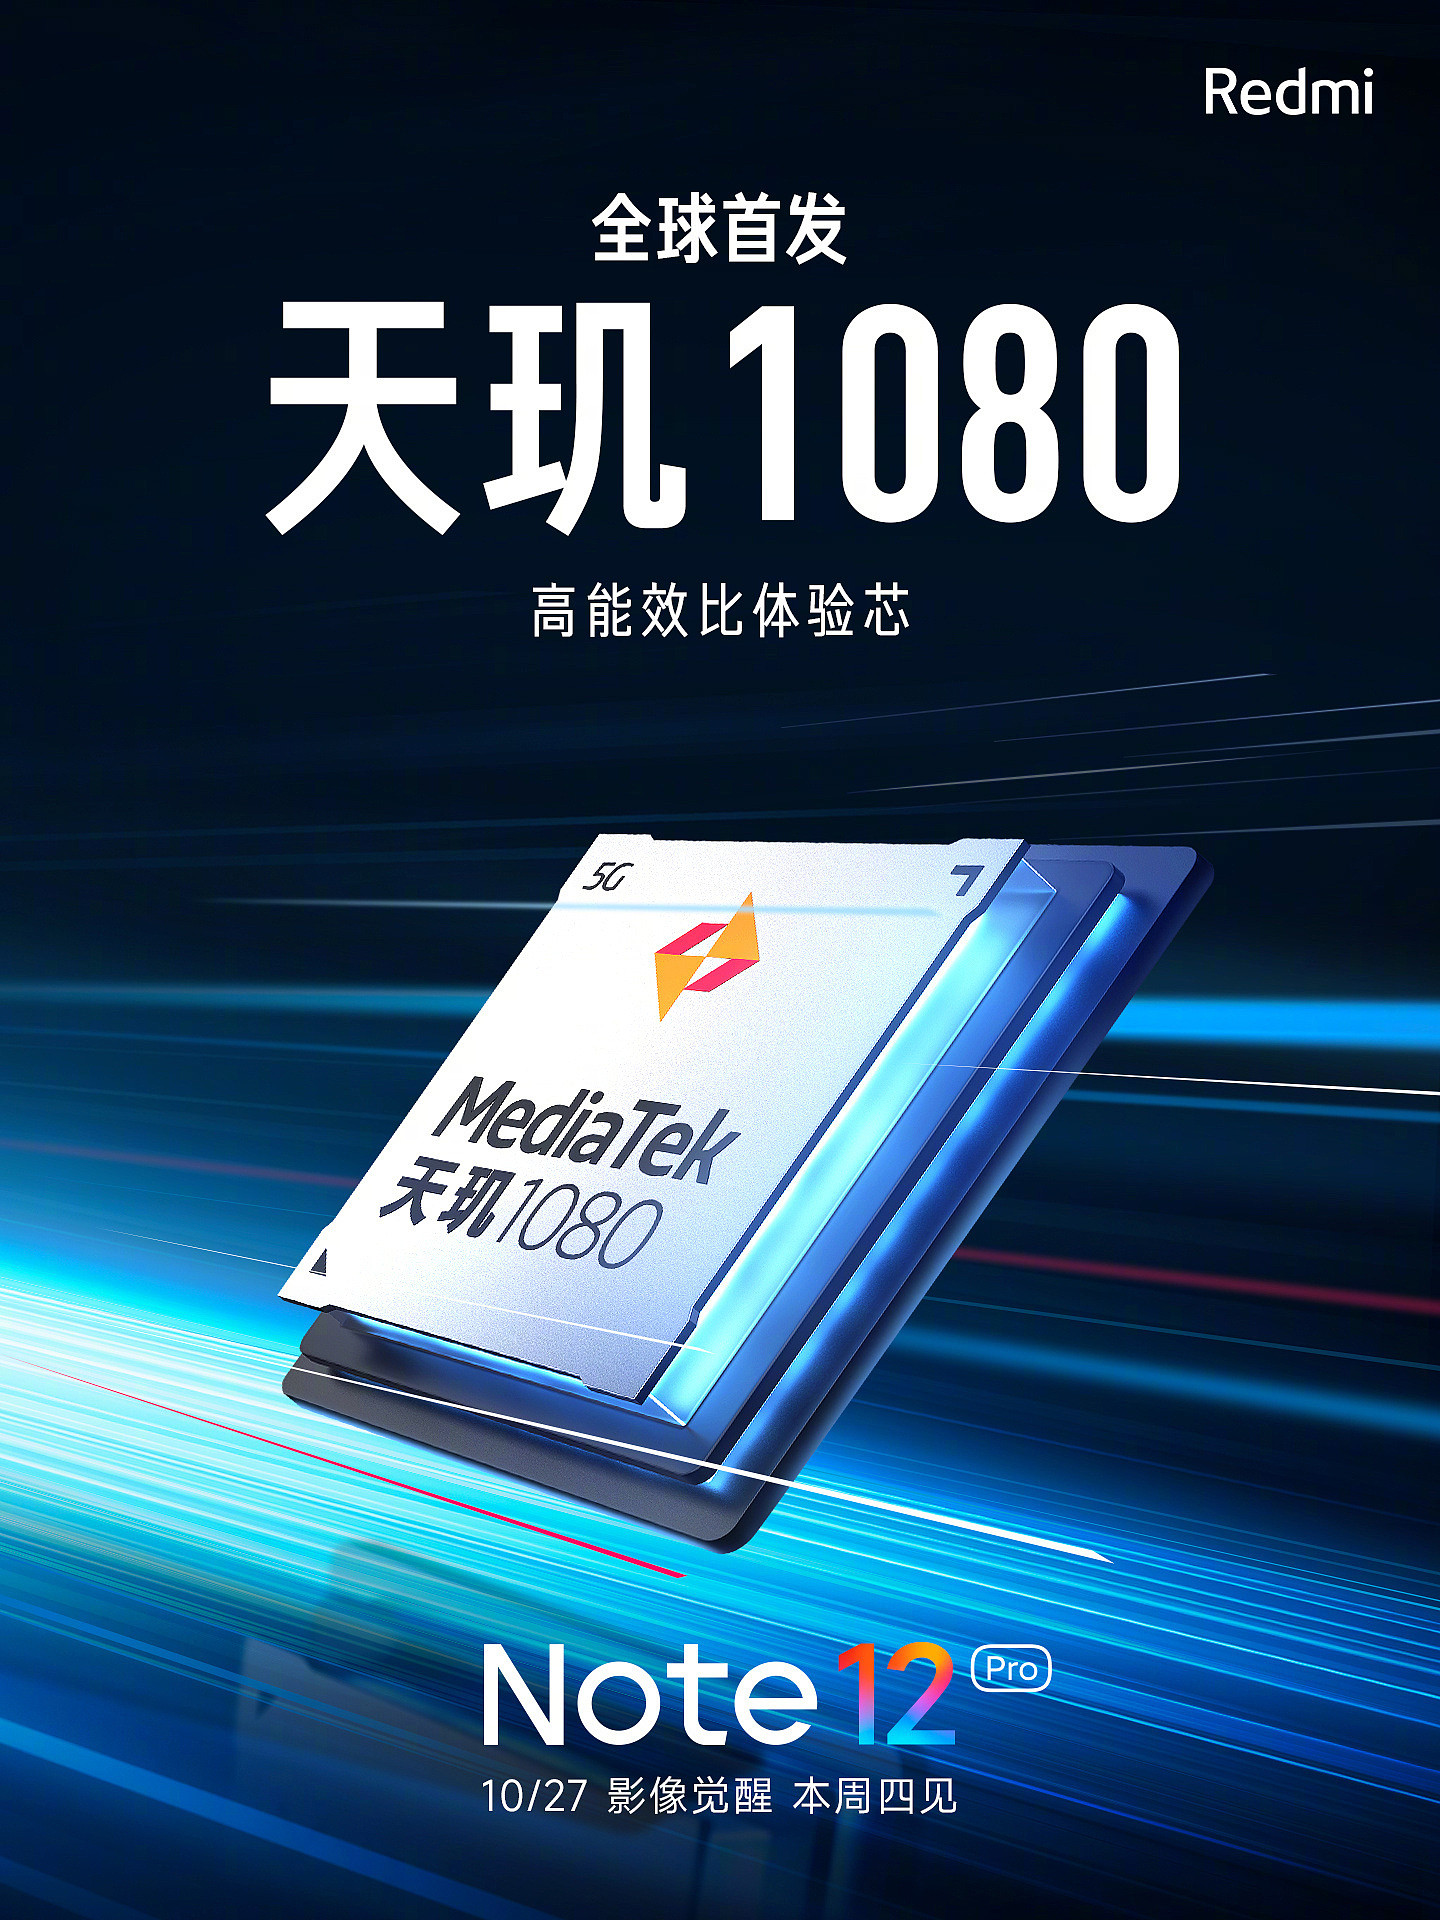 小米 Redmi Note 12 Pro 现身 Geekbench，天玑 1080 与天玑 920 跑分相近 - 2